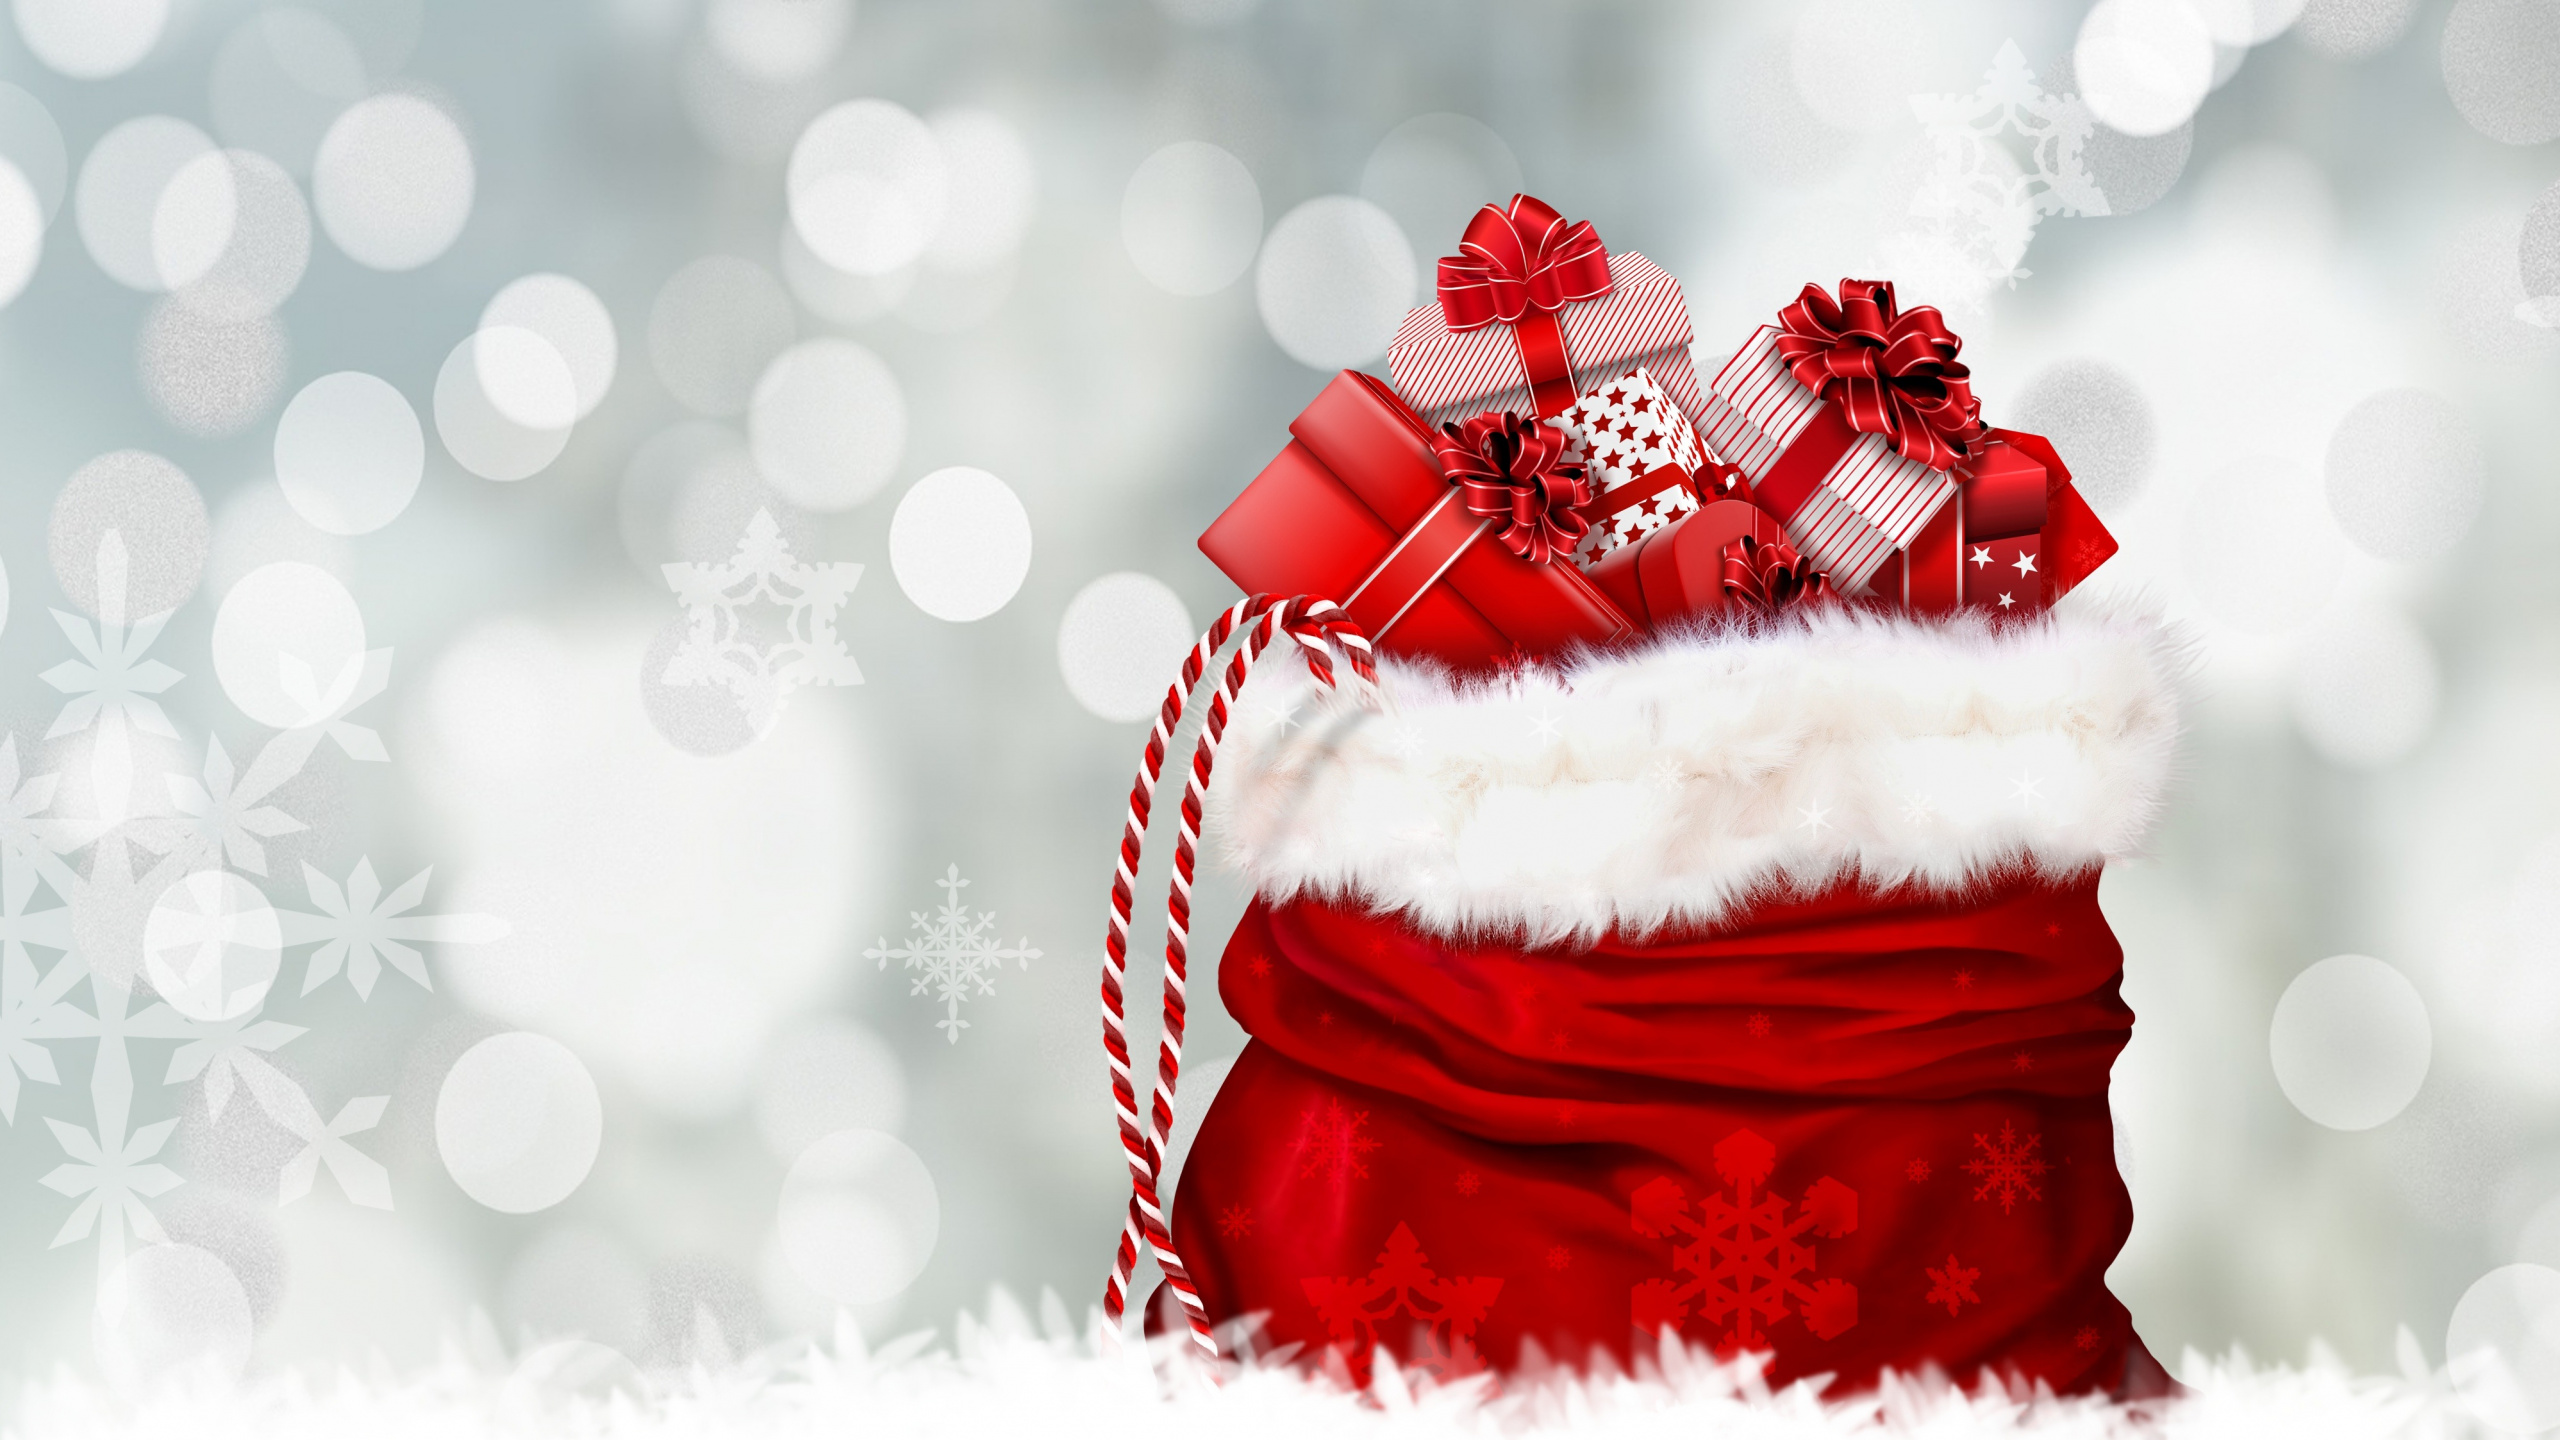 圣诞节那天, 圣诞老人, 圣诞节礼物, 红色的, 冬天 壁纸 2560x1440 允许